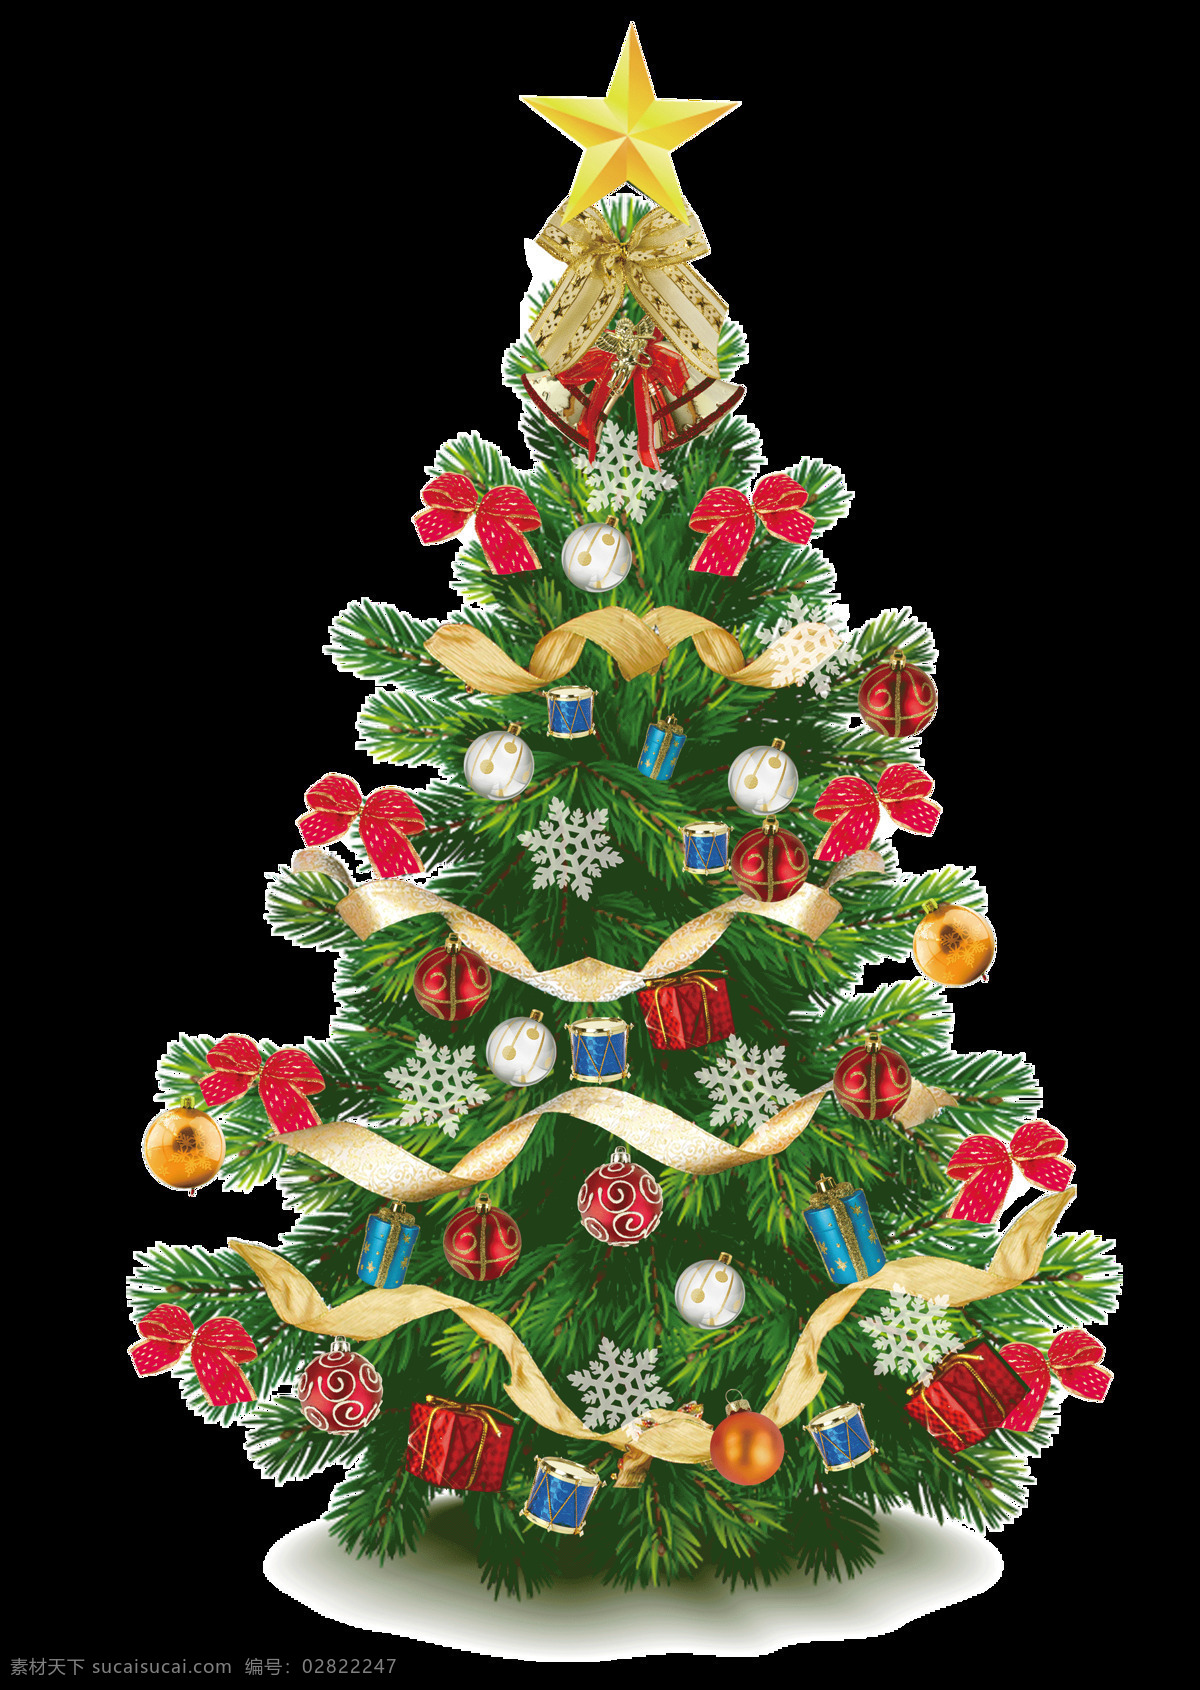 装饰 精美 圣诞树 图案 元素 christmas merry 抽象素材 卡通圣诞元素 卡通元素 设计素材 设计元素 圣诞png 圣诞树装饰 圣诞装扮 装饰图案